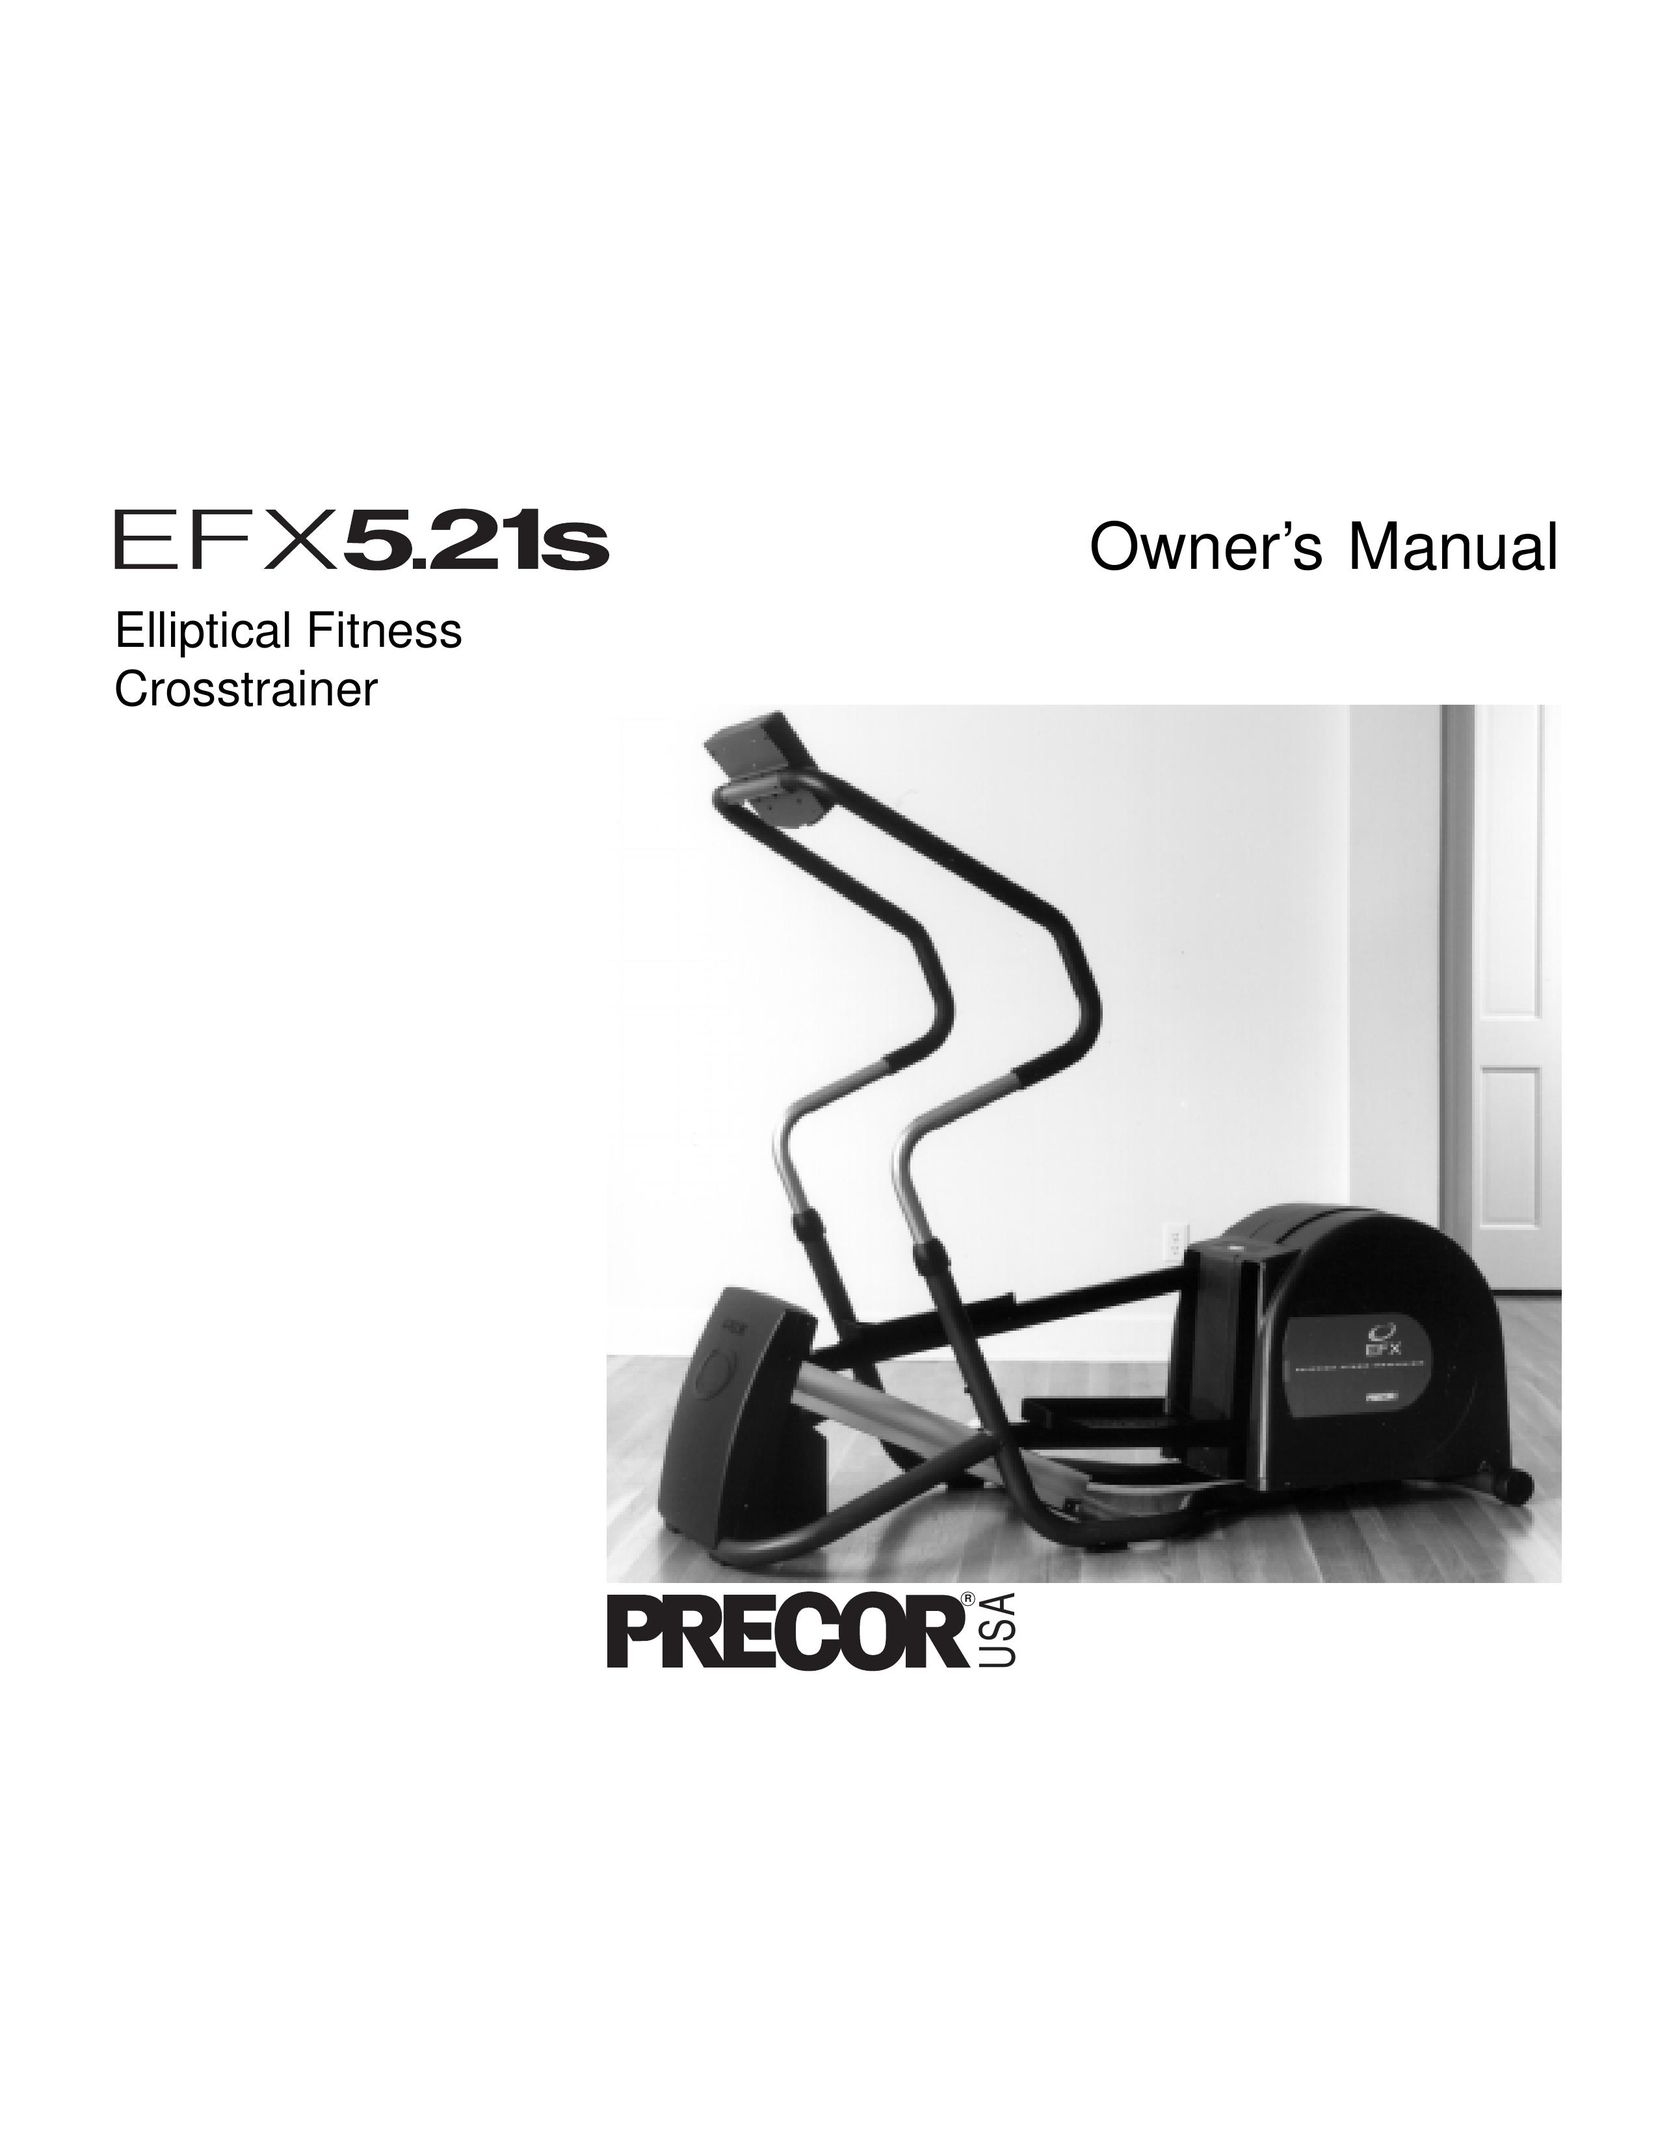 Precor EFX5.21s Elliptical Trainer User Manual